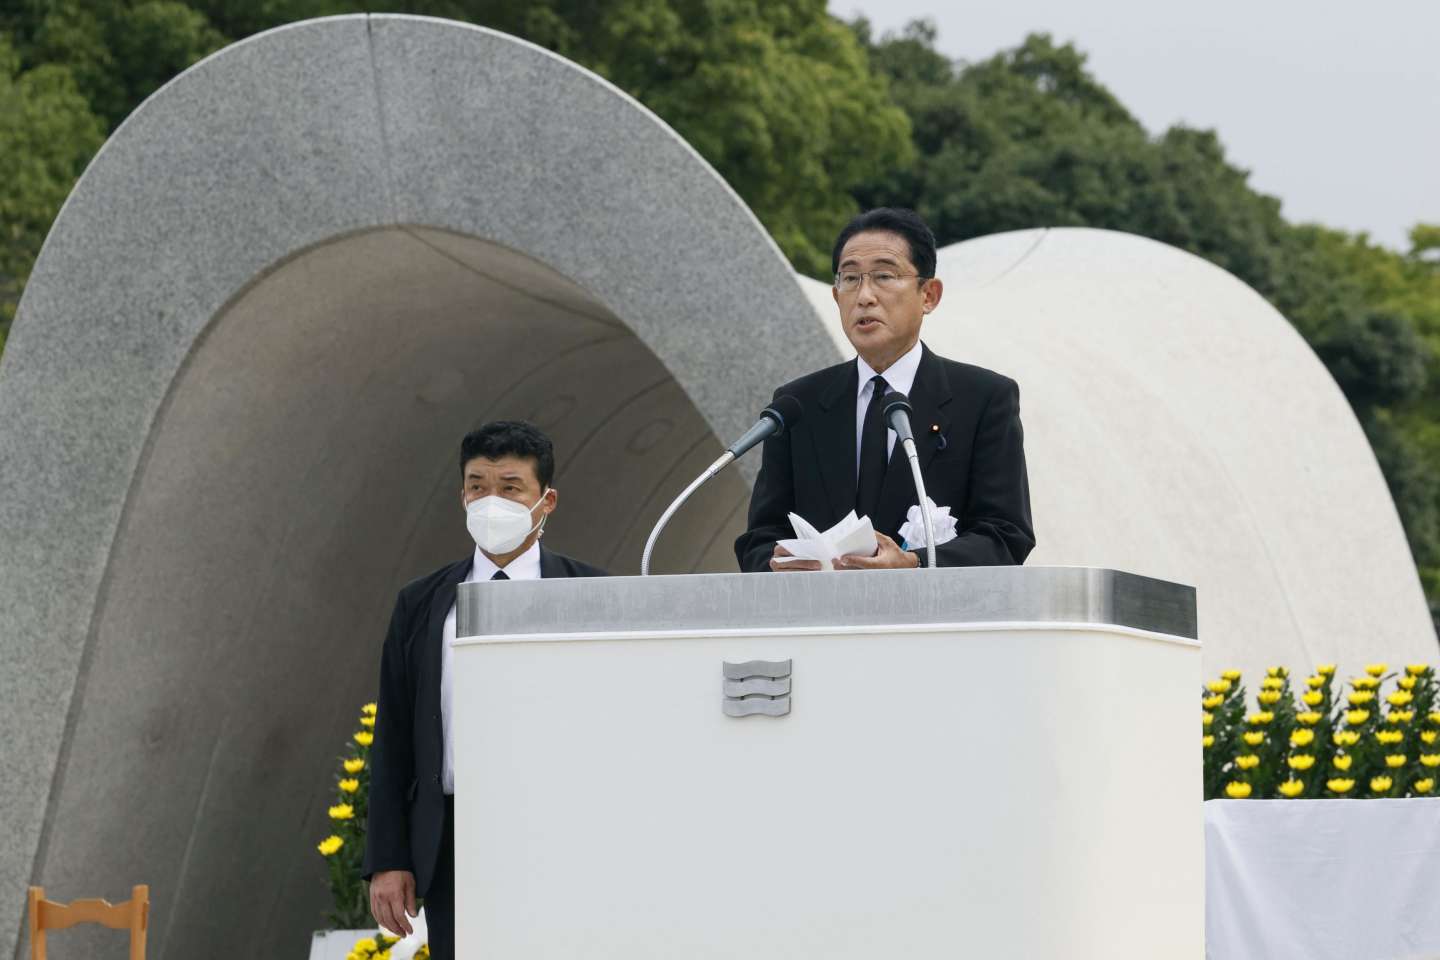 A Hiroshima, le retour de la menace nucléaire dans les conflits inquiète